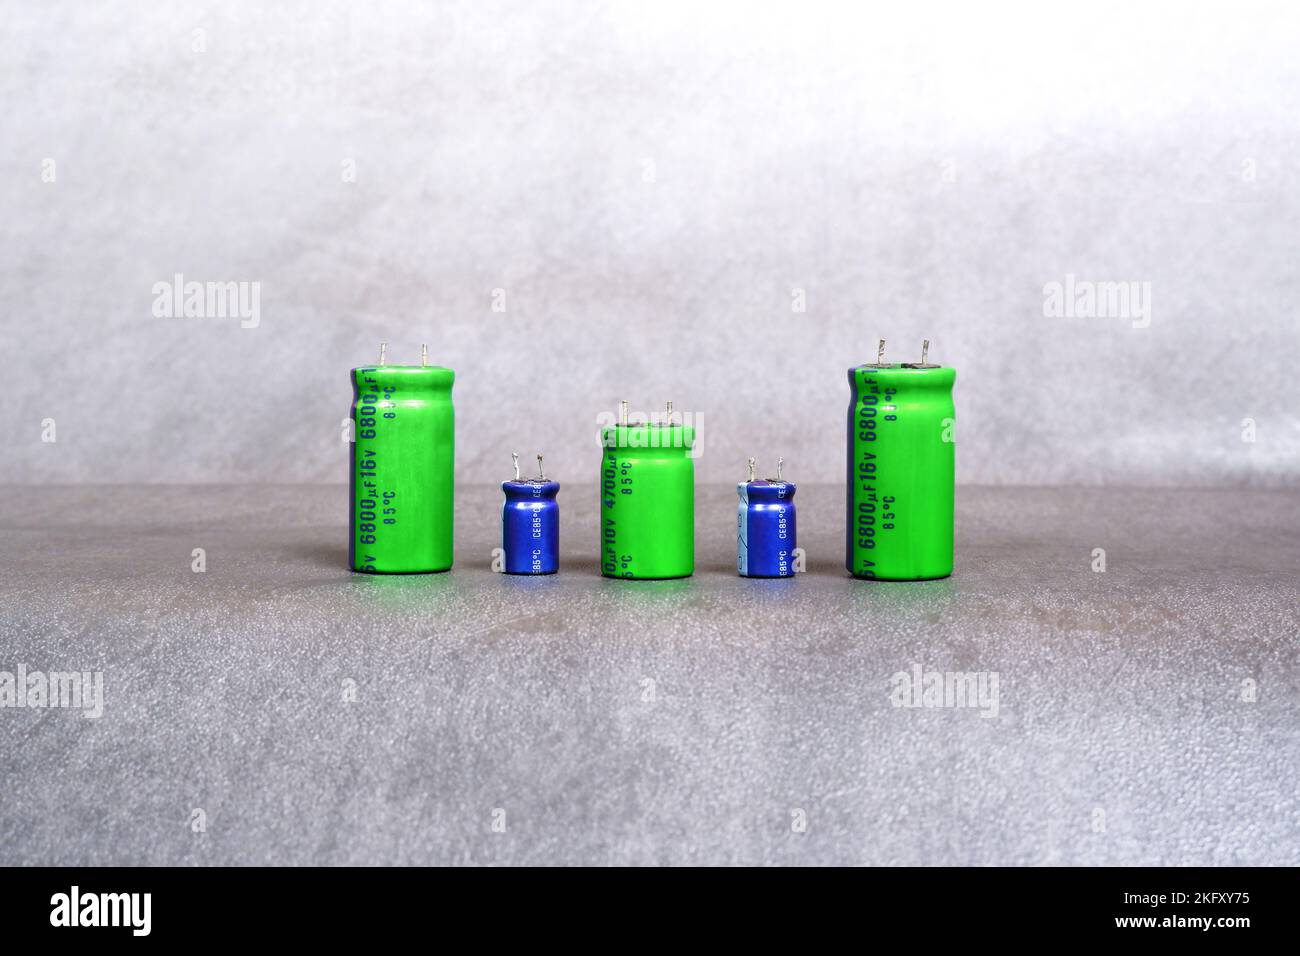 Condensatori elettrolitici di varie dimensioni sono disposti in fila sul pavimento in cemento Foto Stock